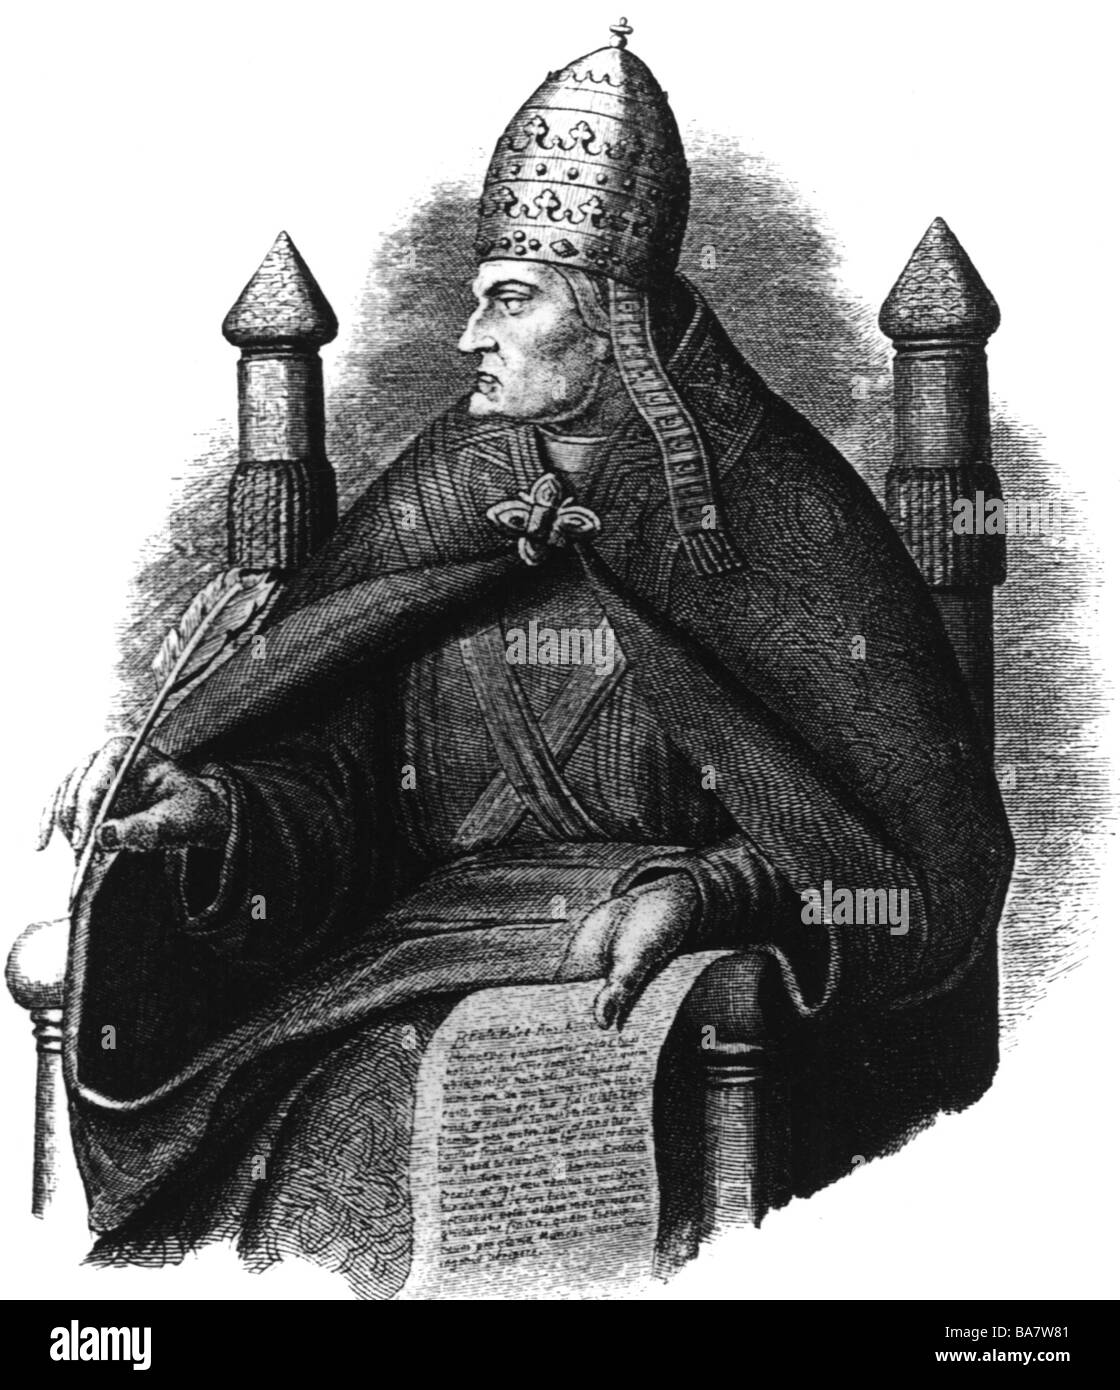 Gregory VII (Hildebrand of Soana), 1020/1025 - 255.5.1085, papa 21.4.1073 - 255.5.1085, a mezza lunghezza, incisione su legno dopo disegno di Karl Herrmann, 1844, , Foto Stock